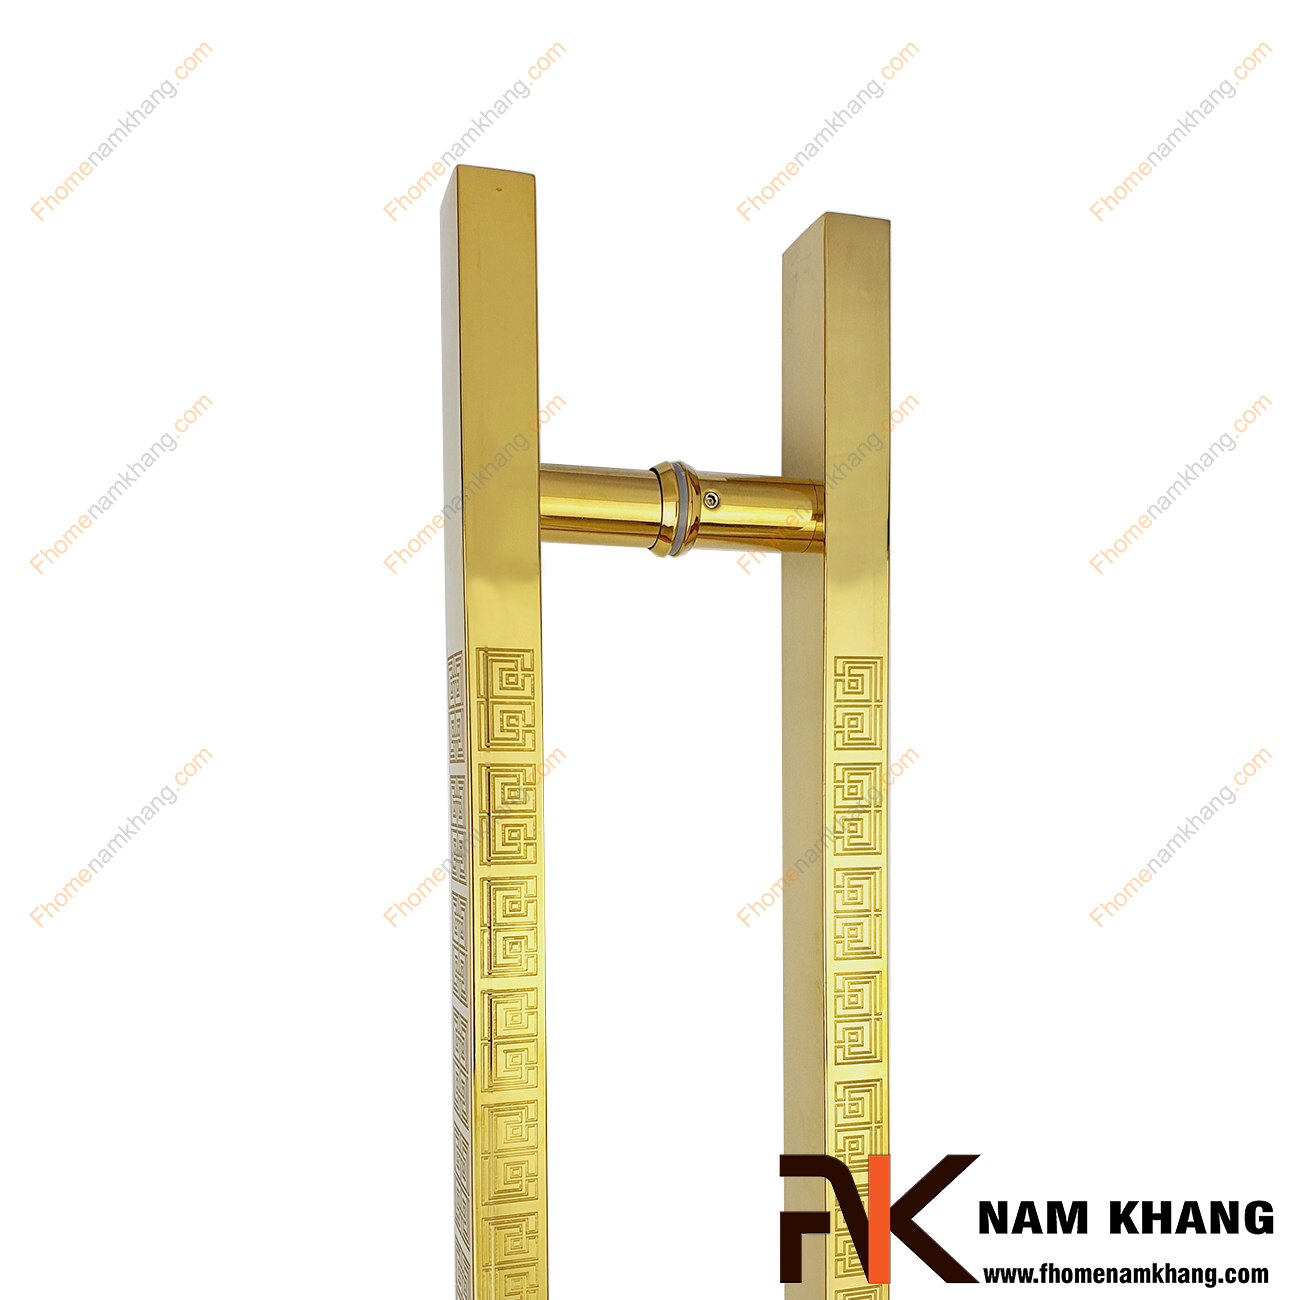 Tay nắm cửa chính dạng thanh vuông chữ vạn NK901-V201 là dạng tay nắm cao cấp sử dụng cho mọi loại cửa với nhiều chất liệu từ gỗ, kính, nhôm,...